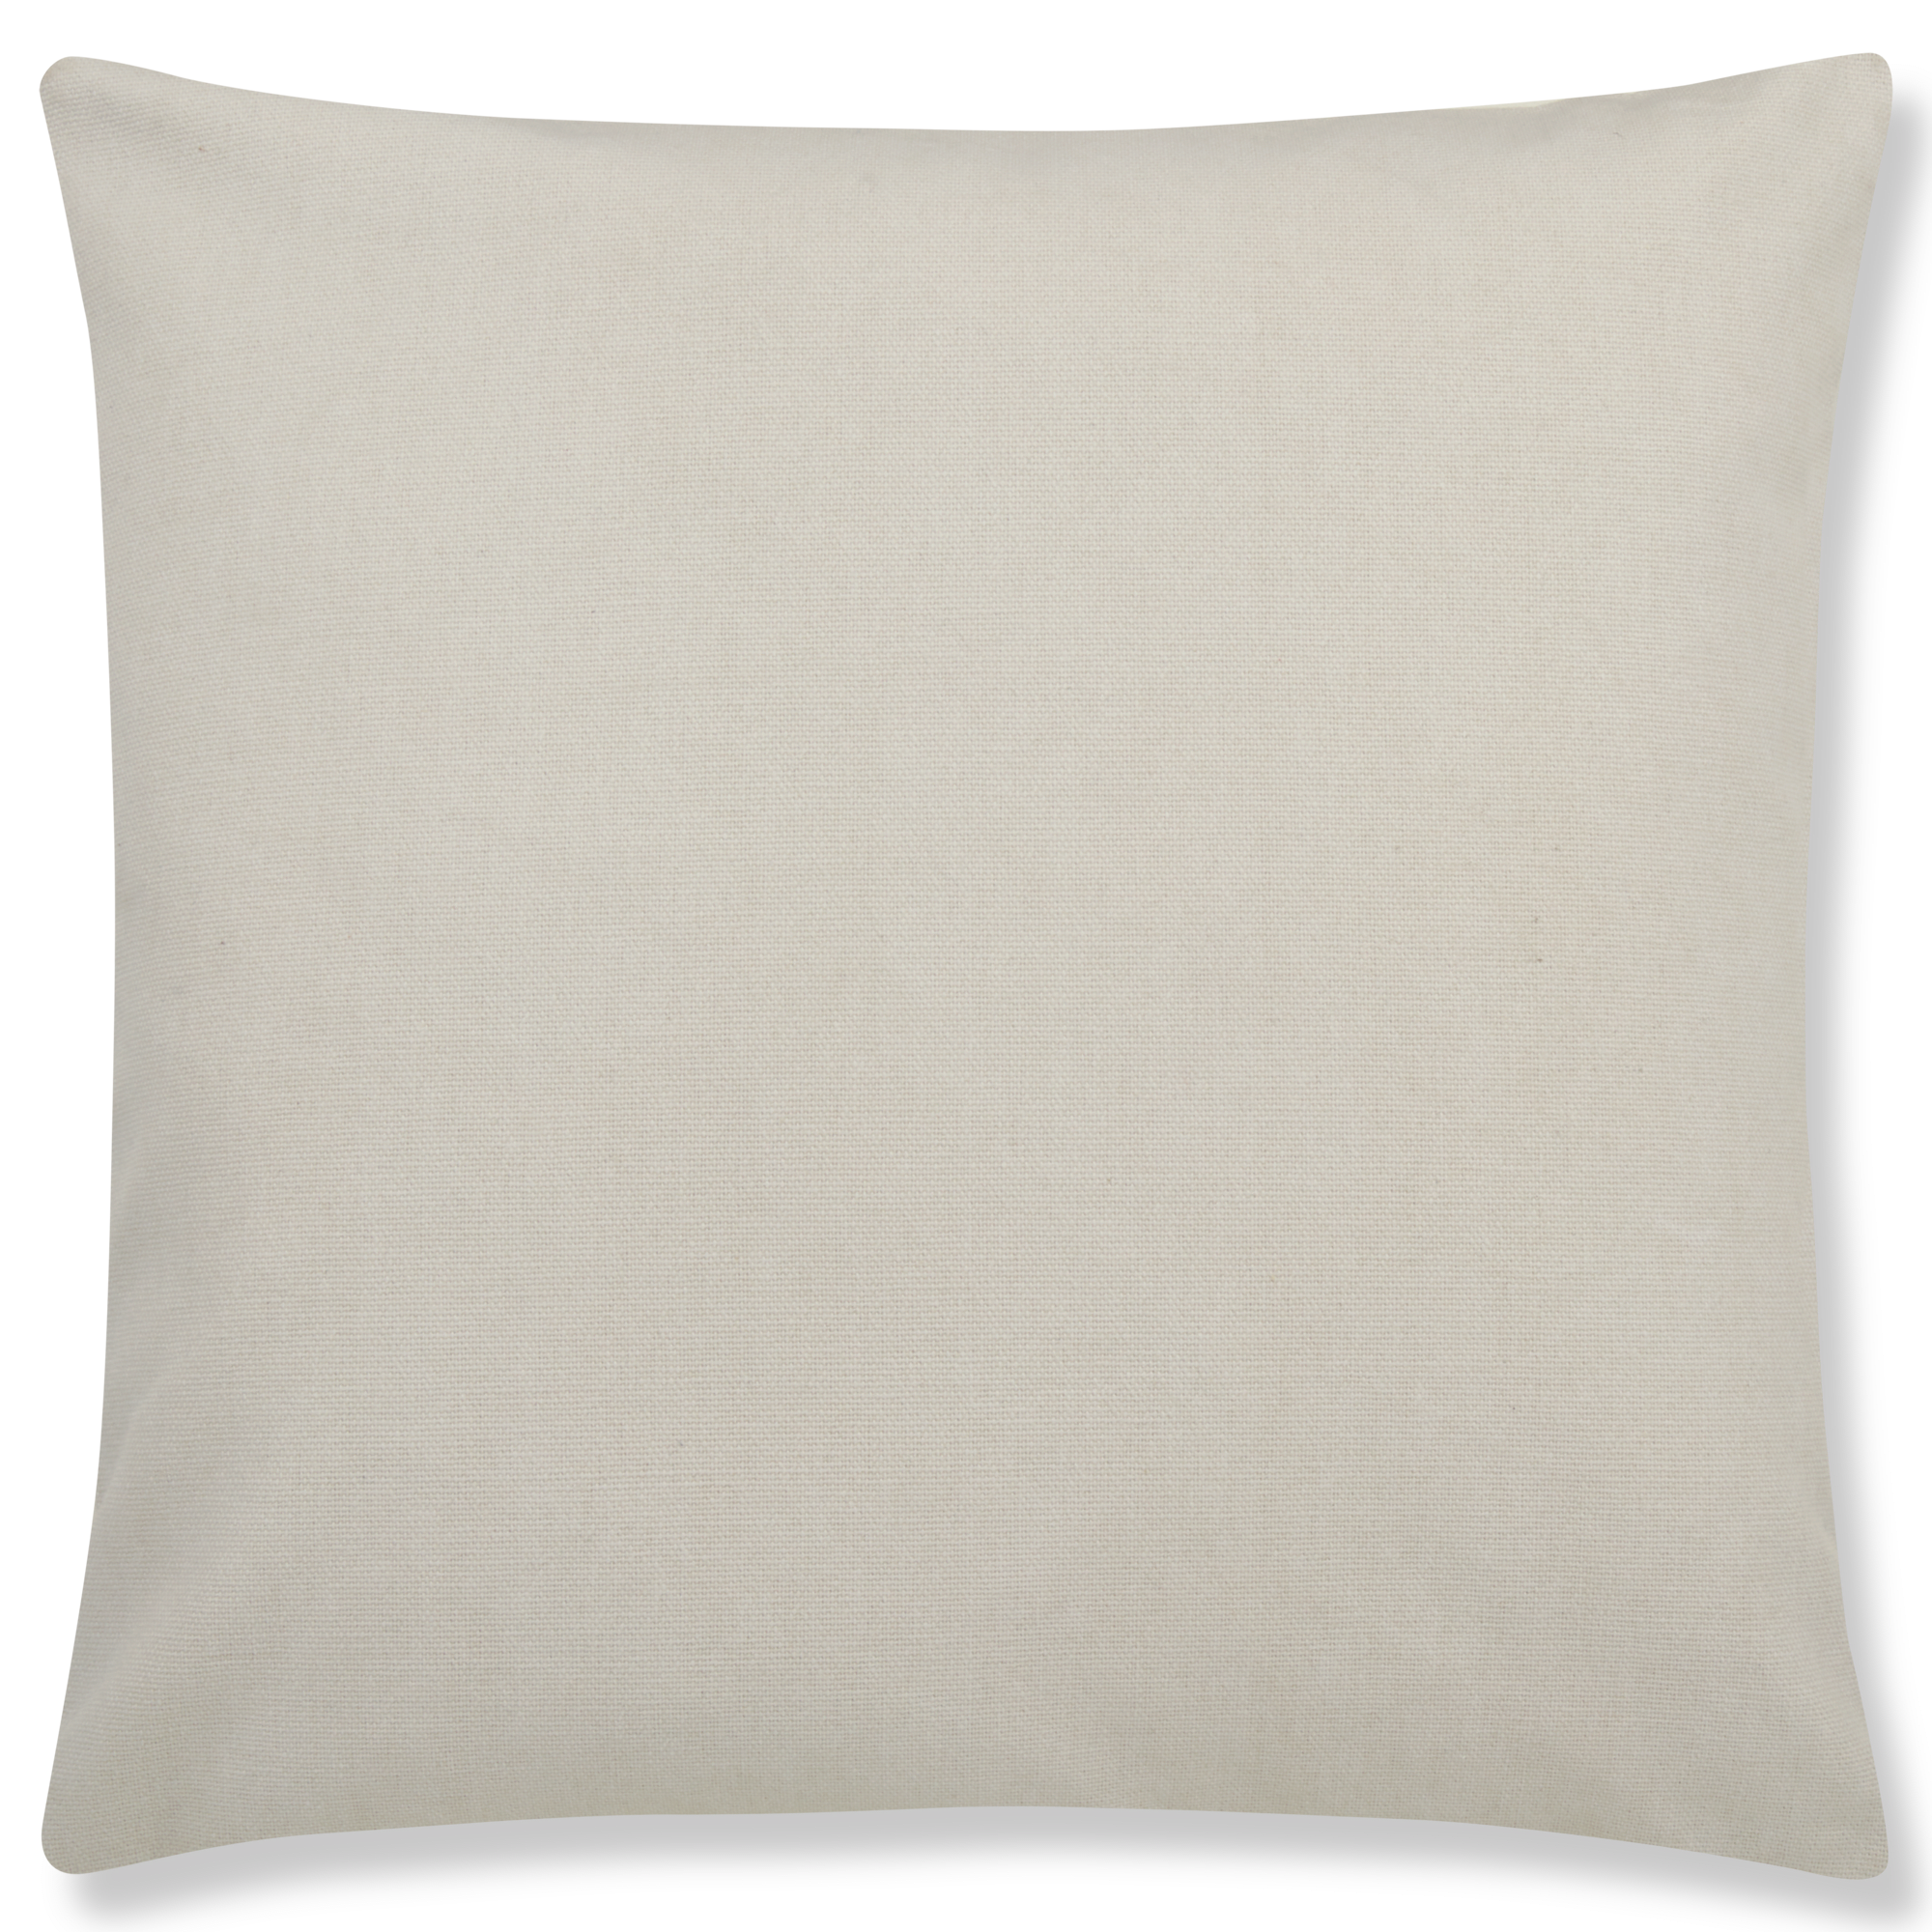 Edwin Cotton Throw Pillow Cover 